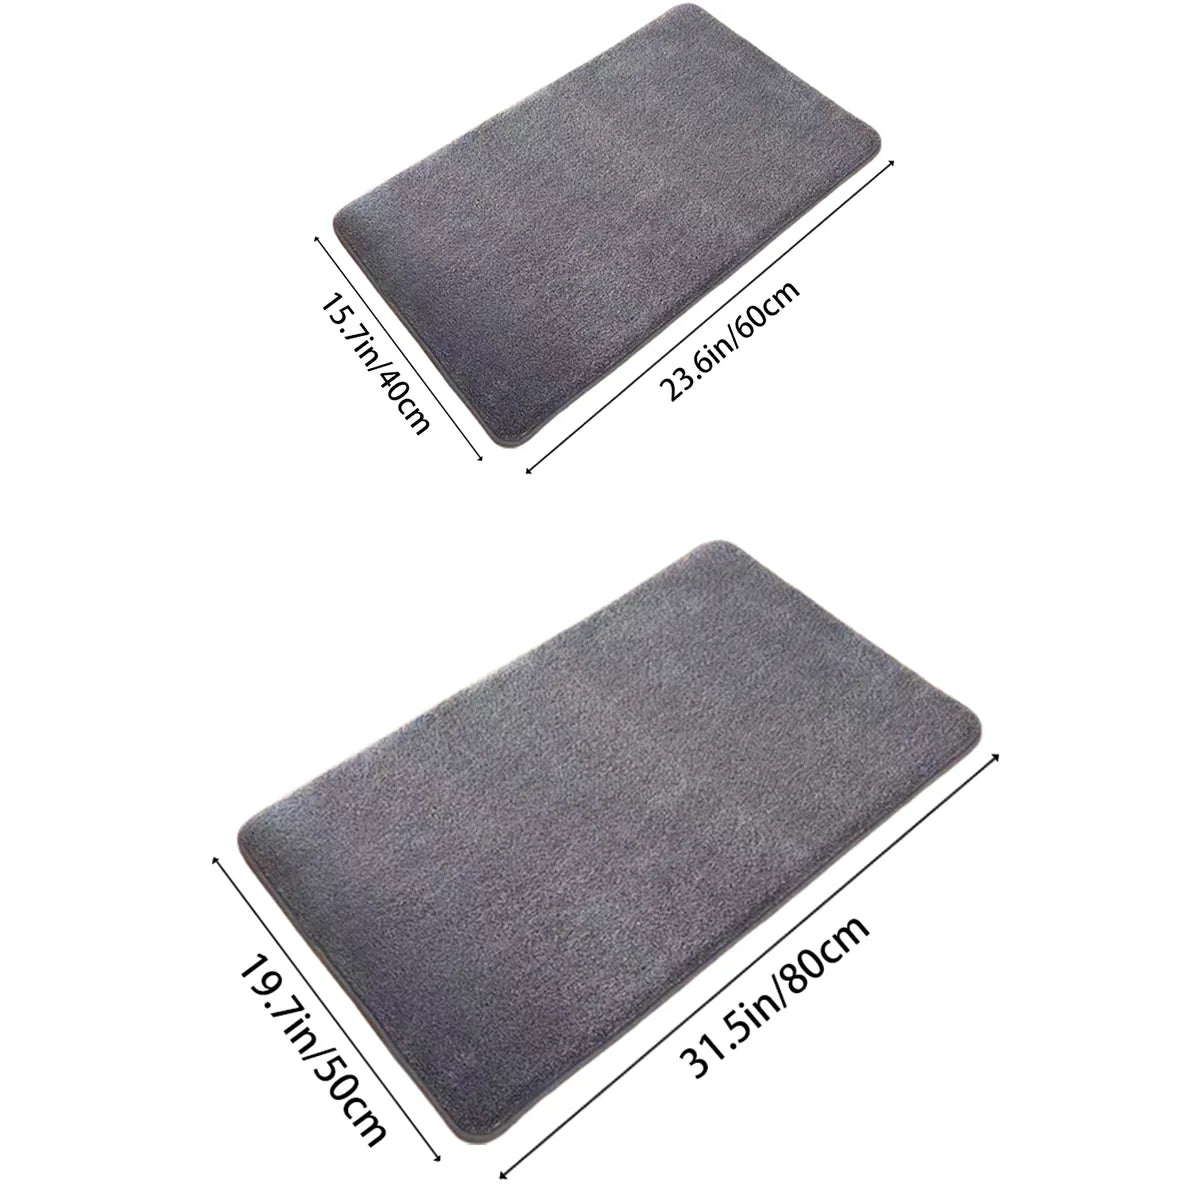 Super absorbent floor mat, super absorbent bath mat, super anti slip